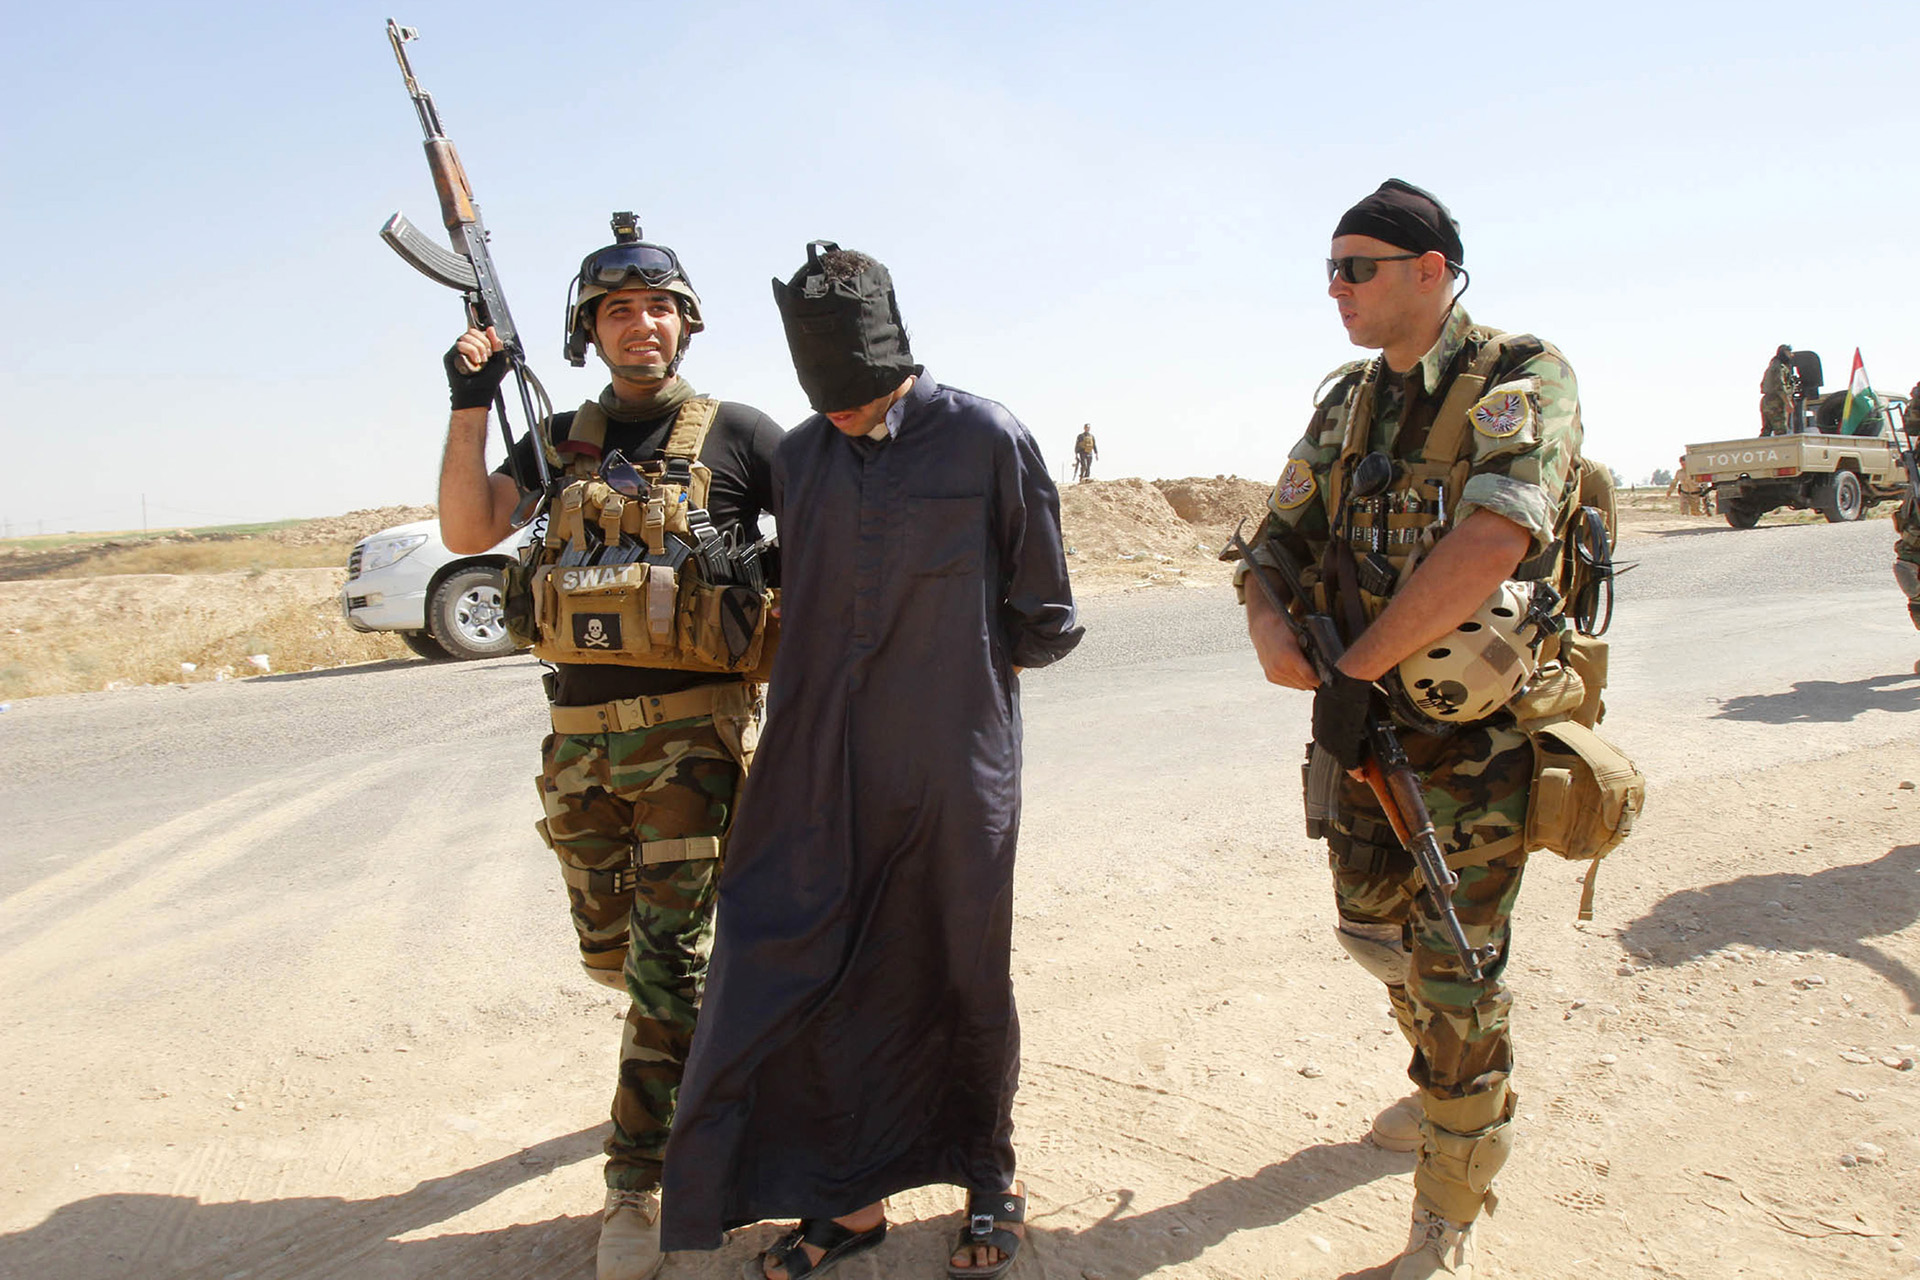 Un soldado de ISIS cuenta que ha violado a 200 mujeres y matado a 500 personas